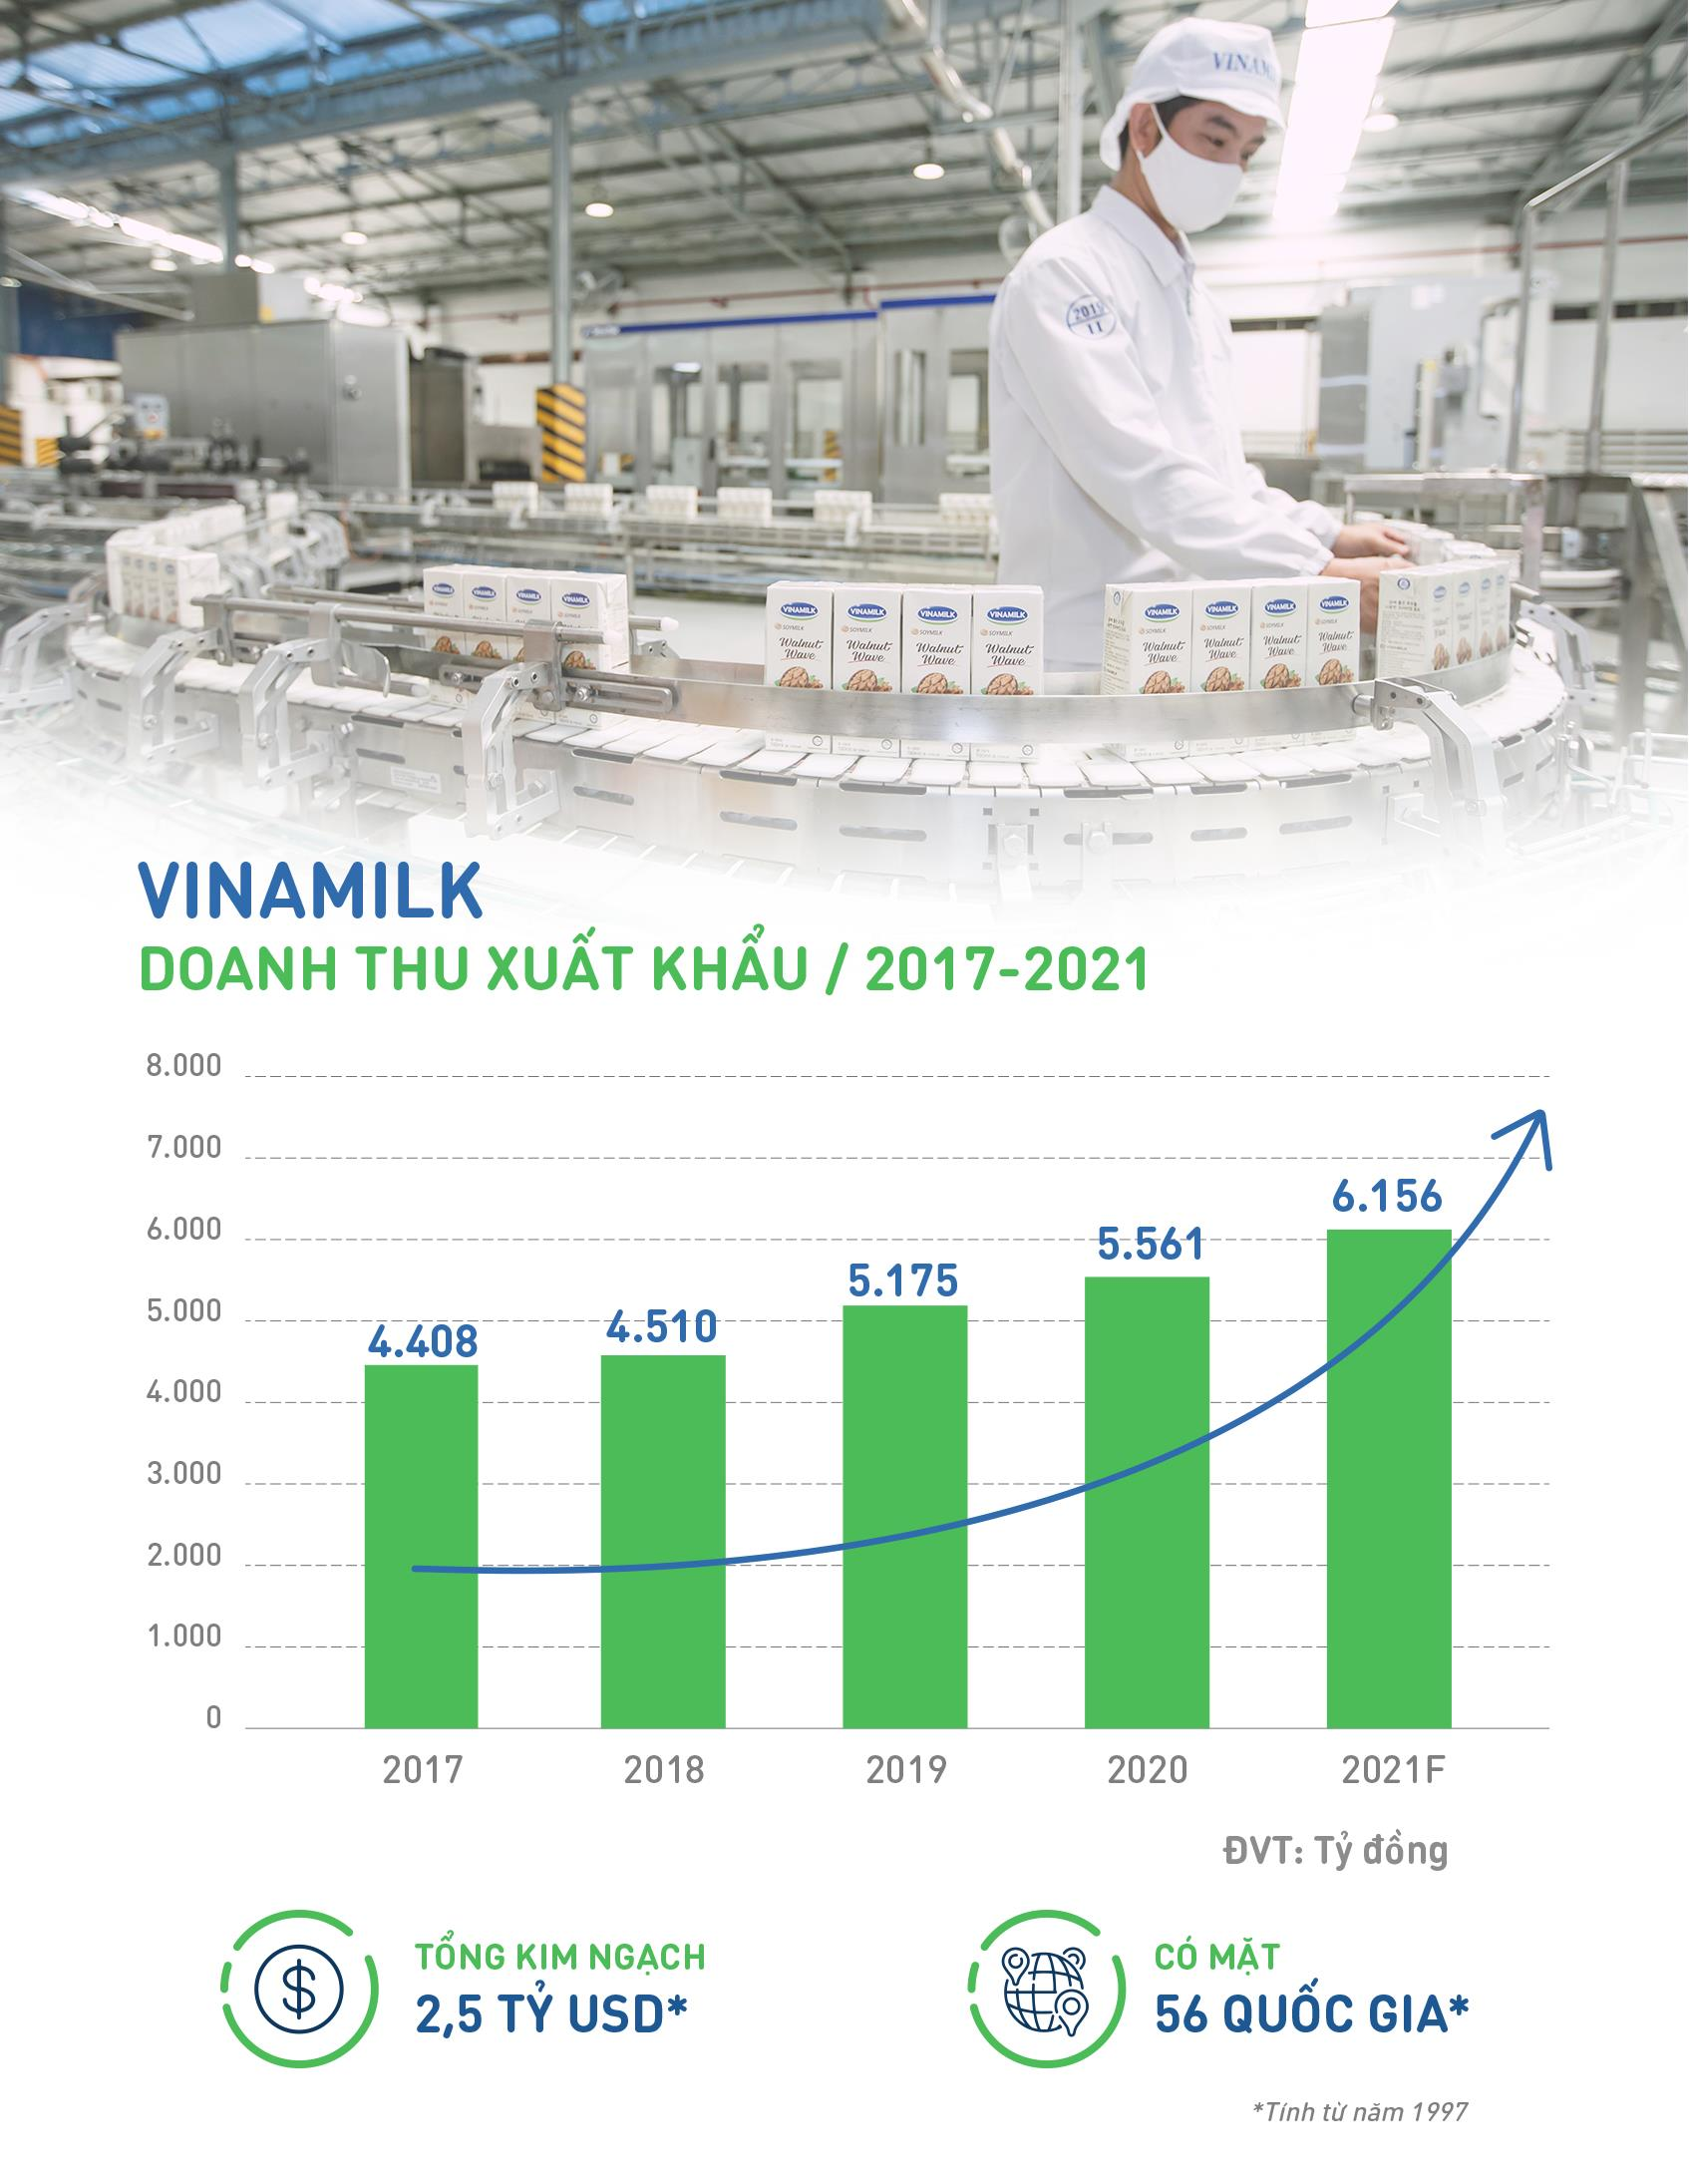 Vinamilk khẳng định uy tín về xuất khẩu, tăng trưởng ổn định trong đại dịch - 1